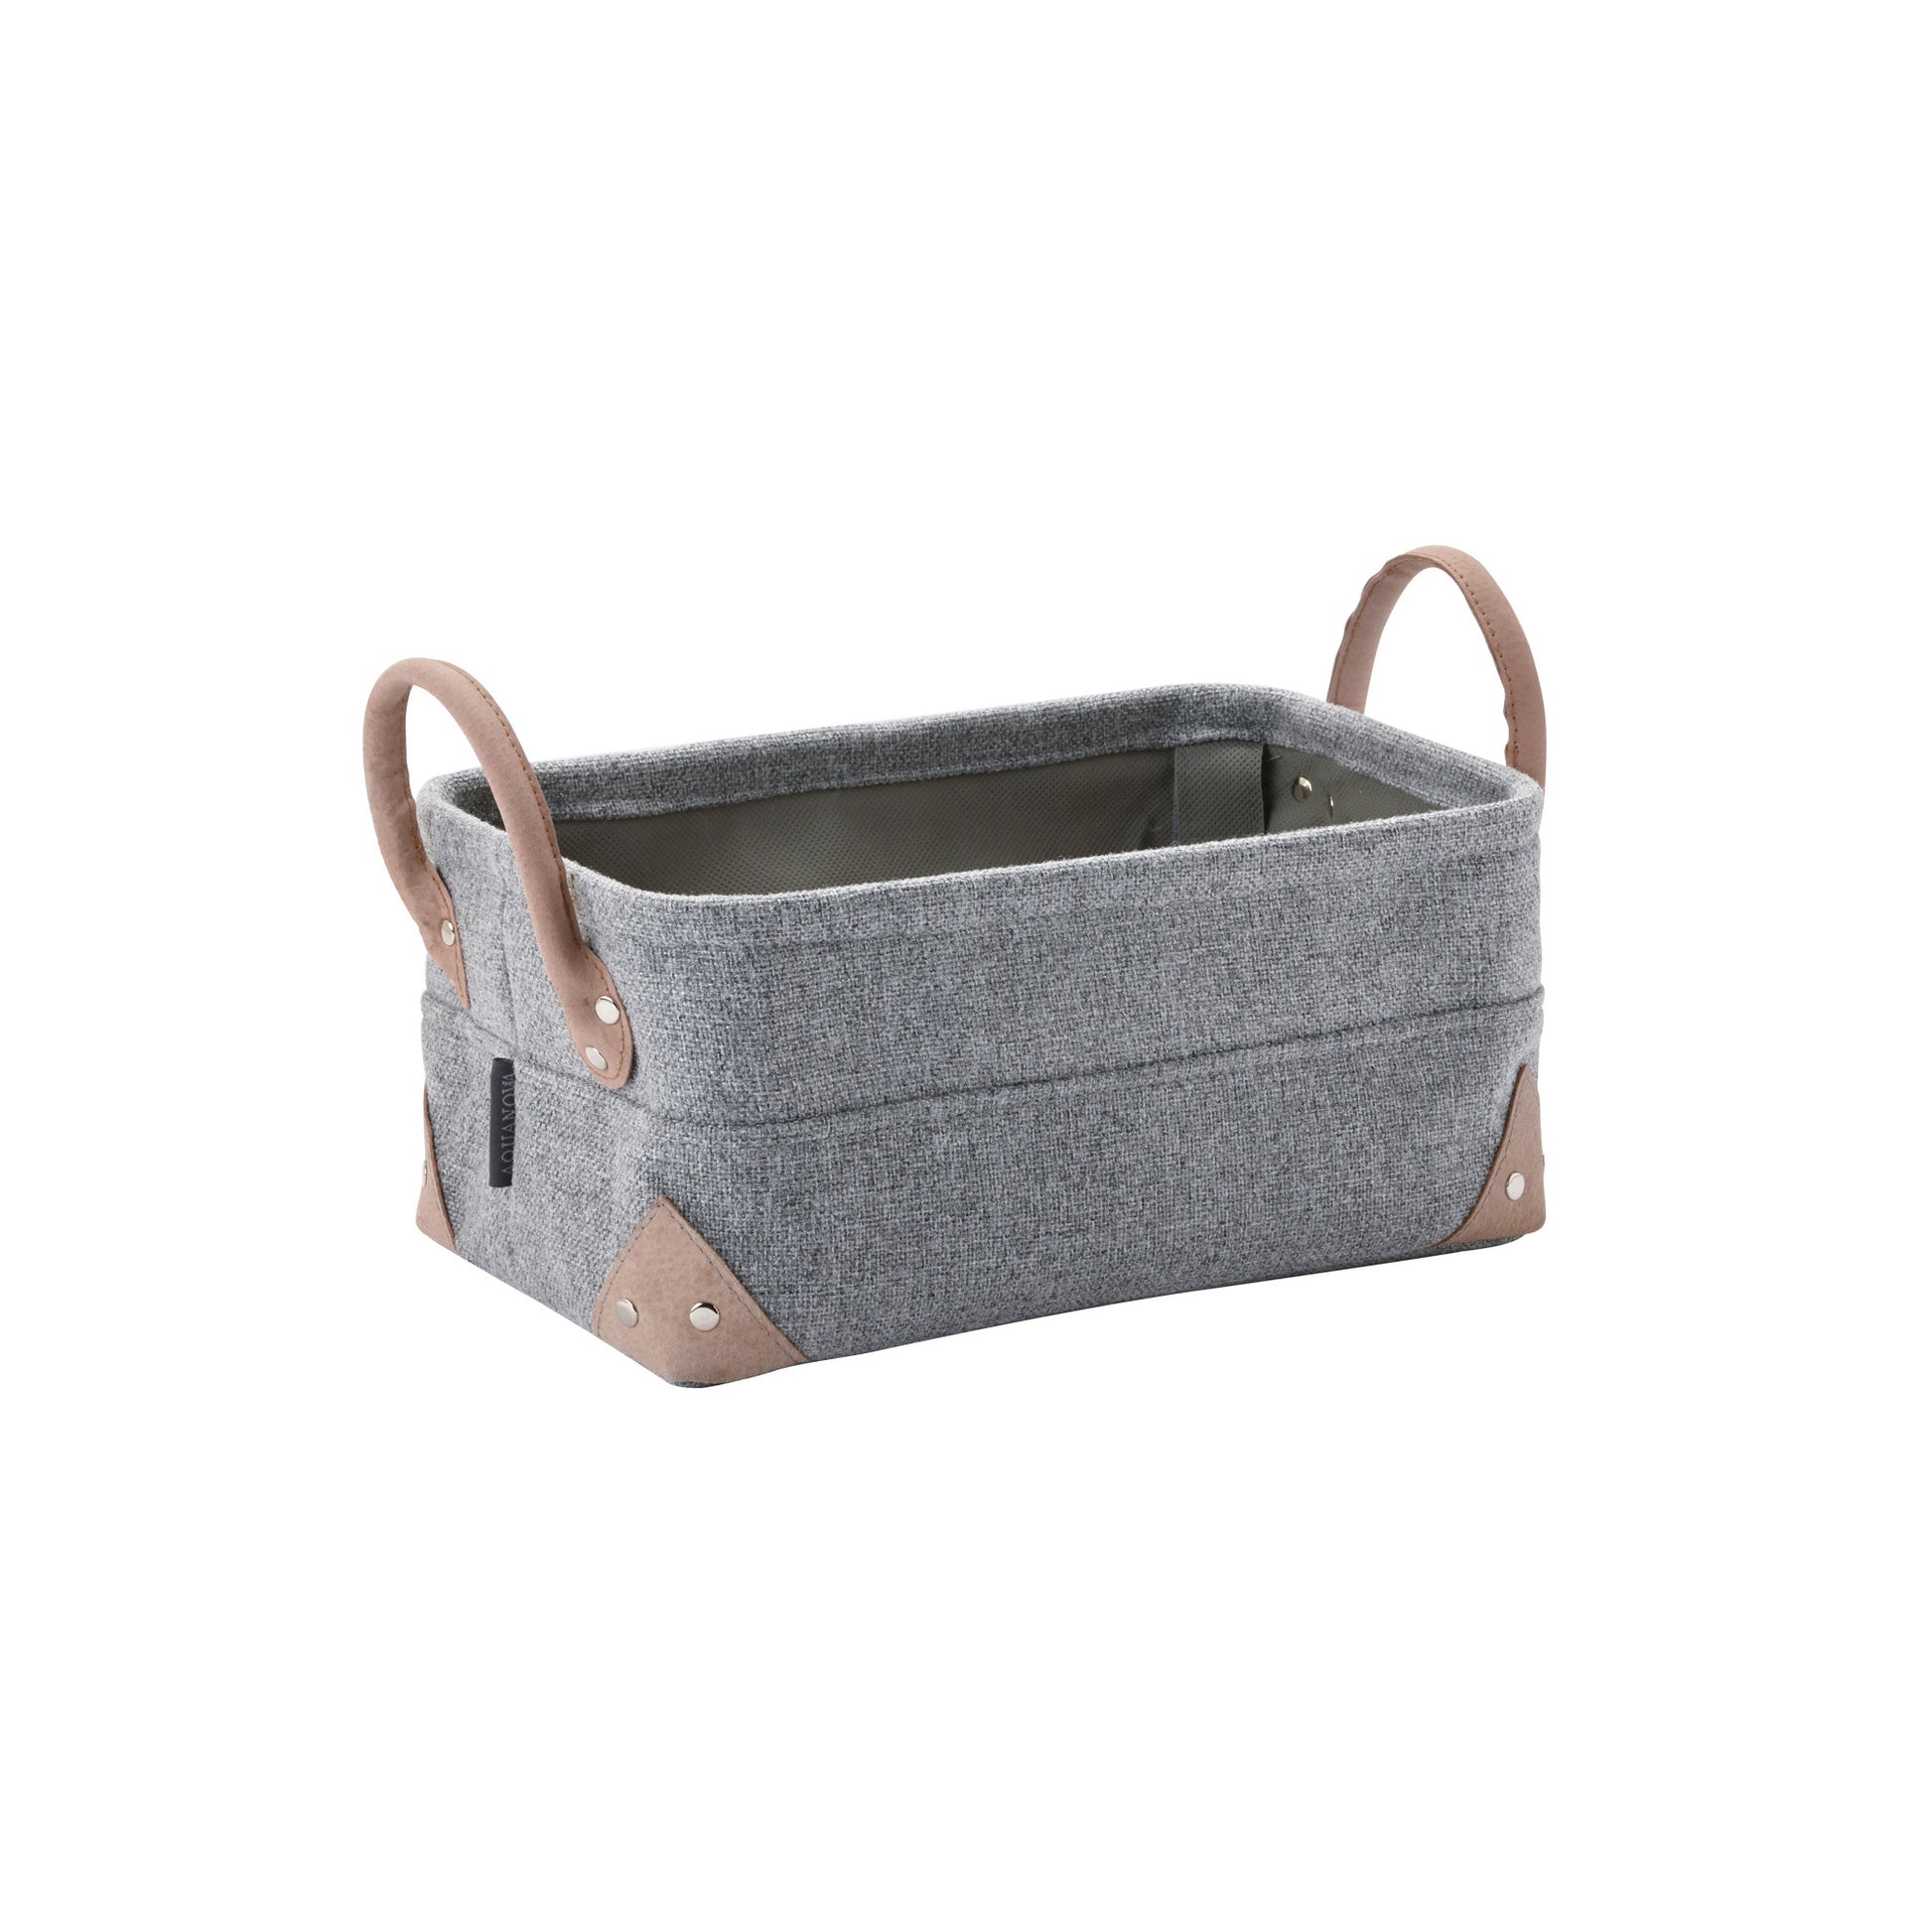 Small Grey Storage Basket